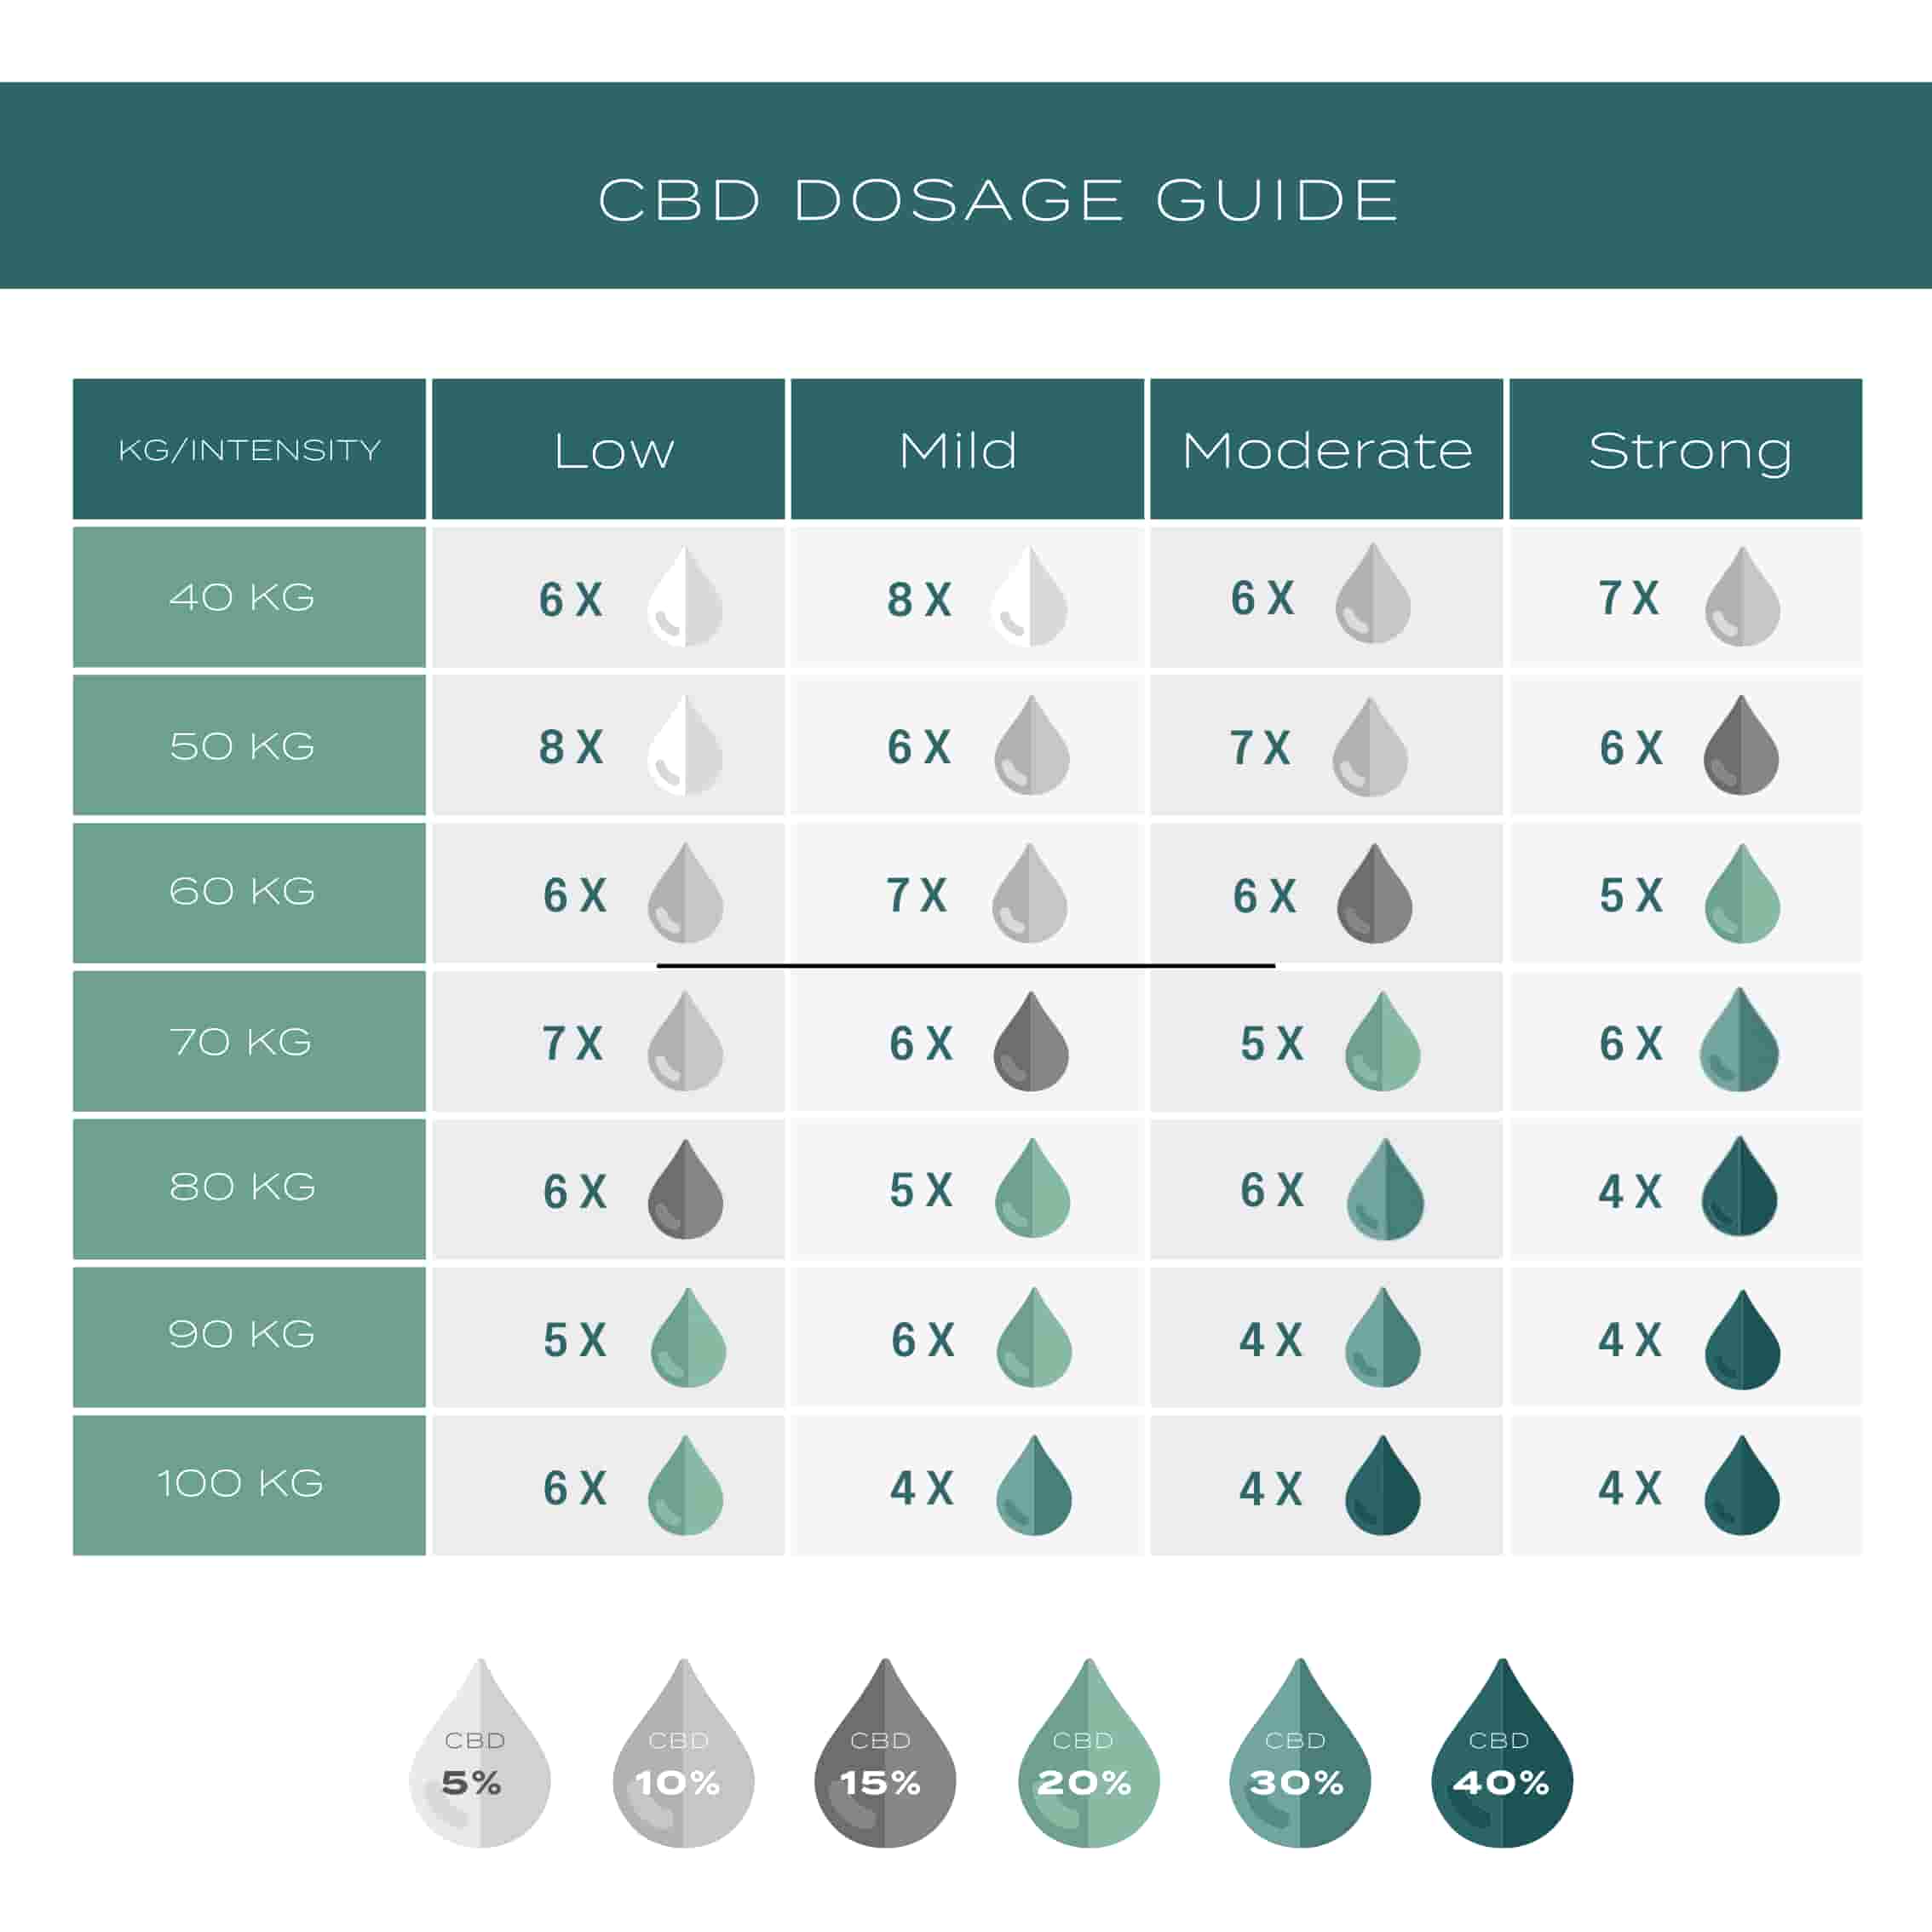 cbd dosage guide 20% cbd oil